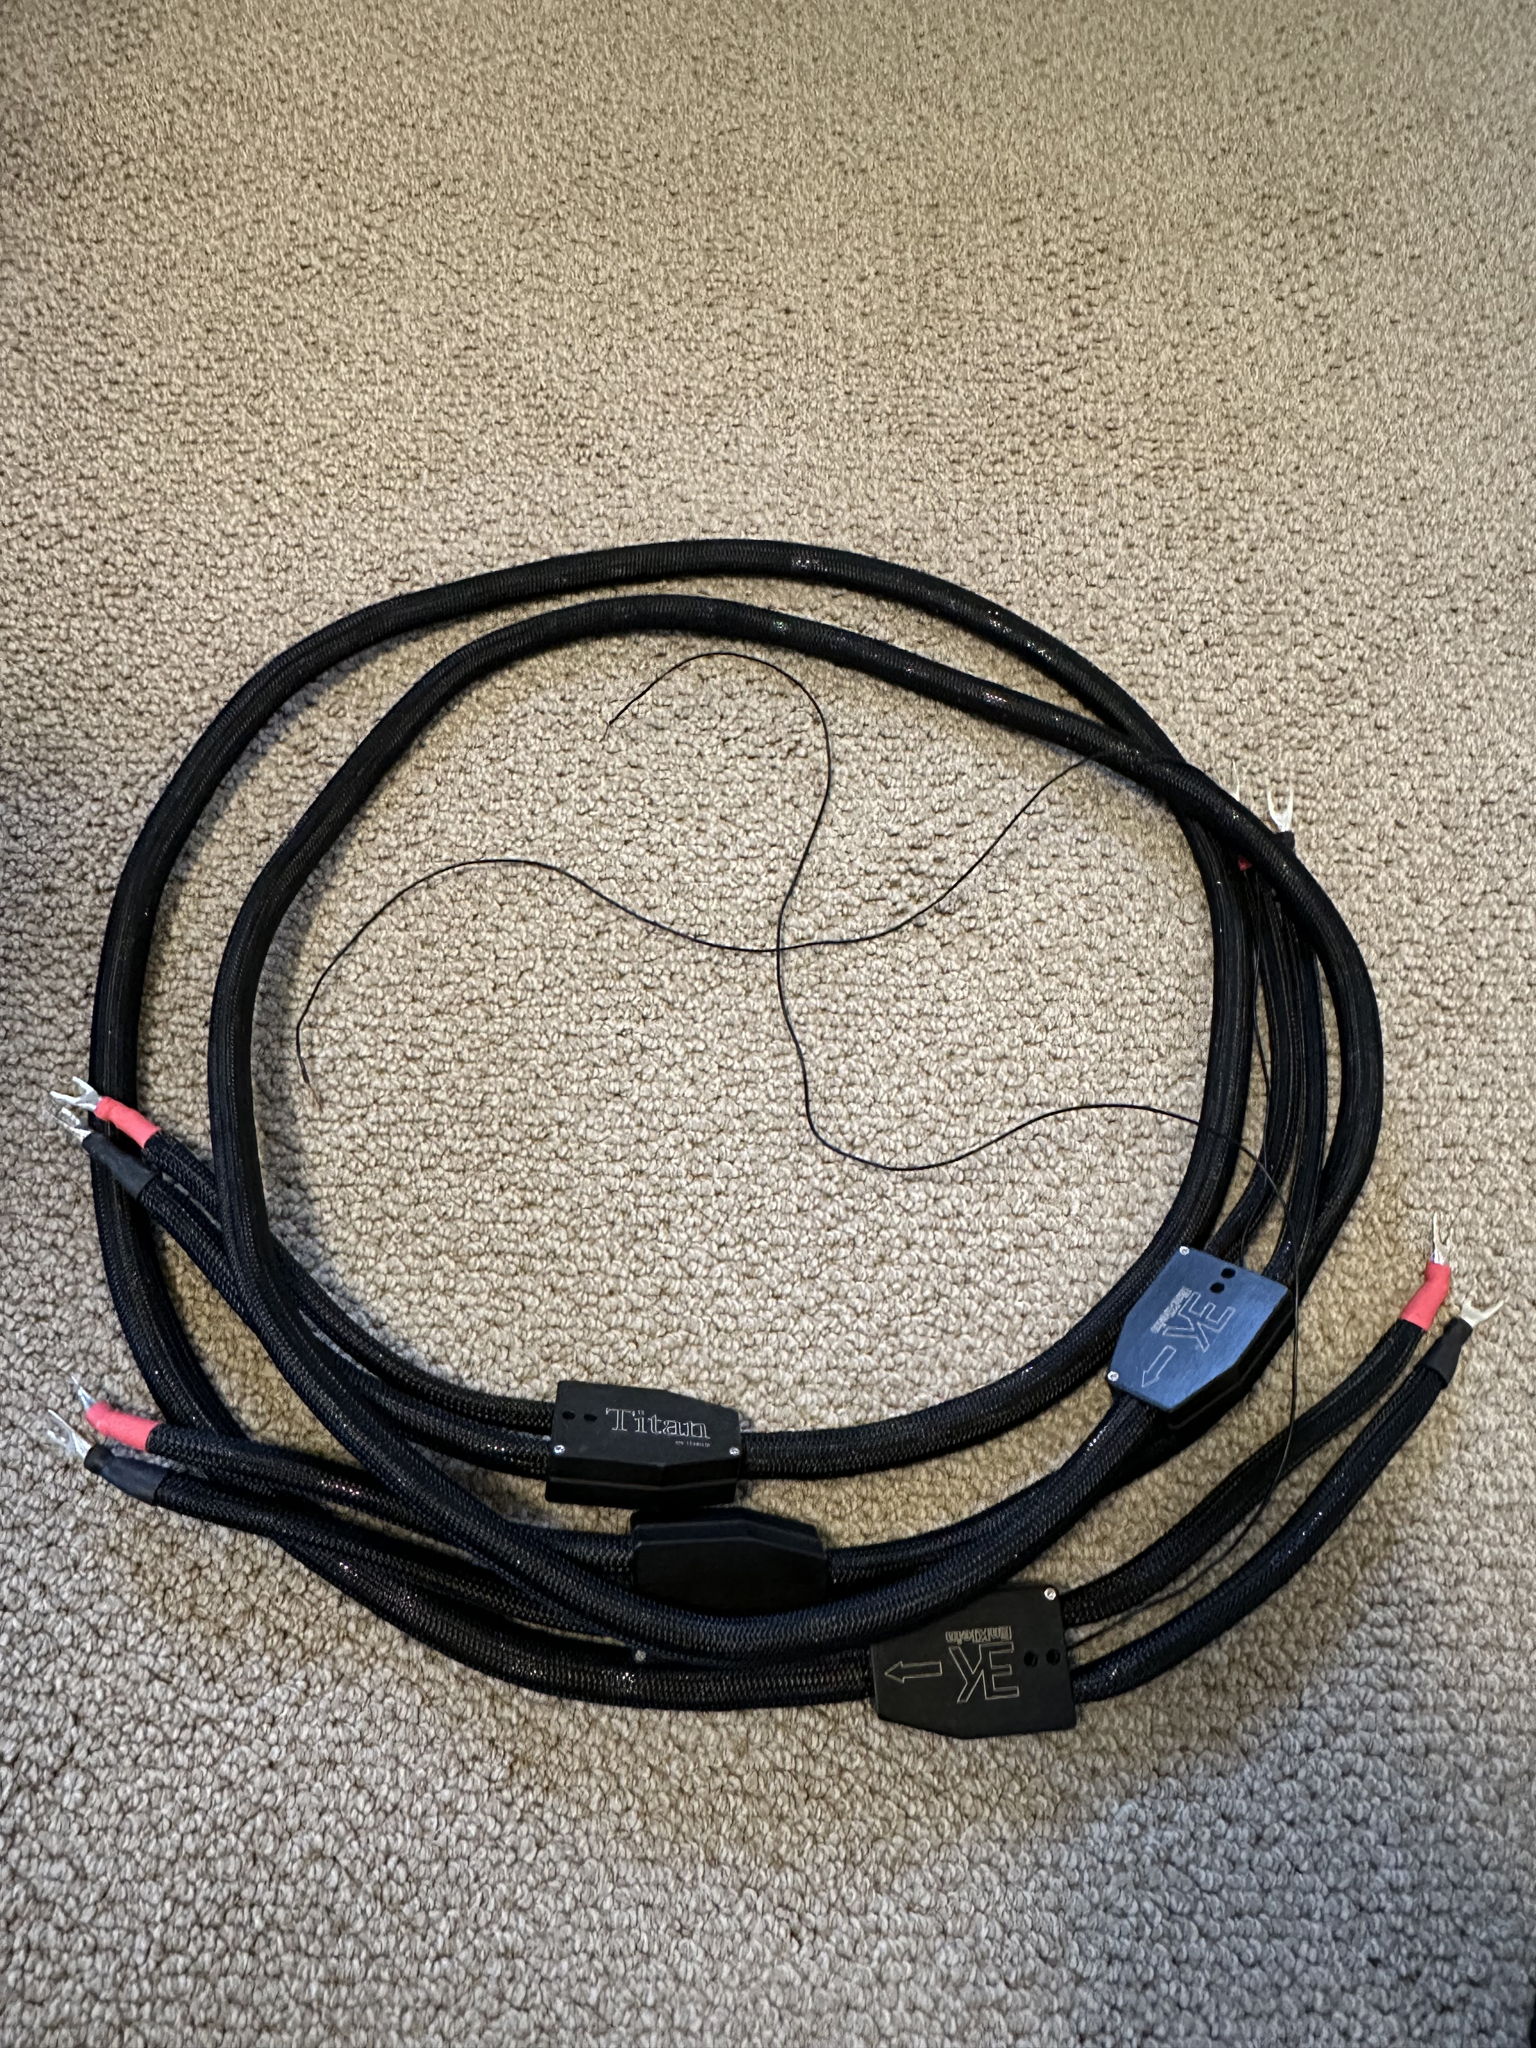 EnKlein Titan 8 foot speaker cables